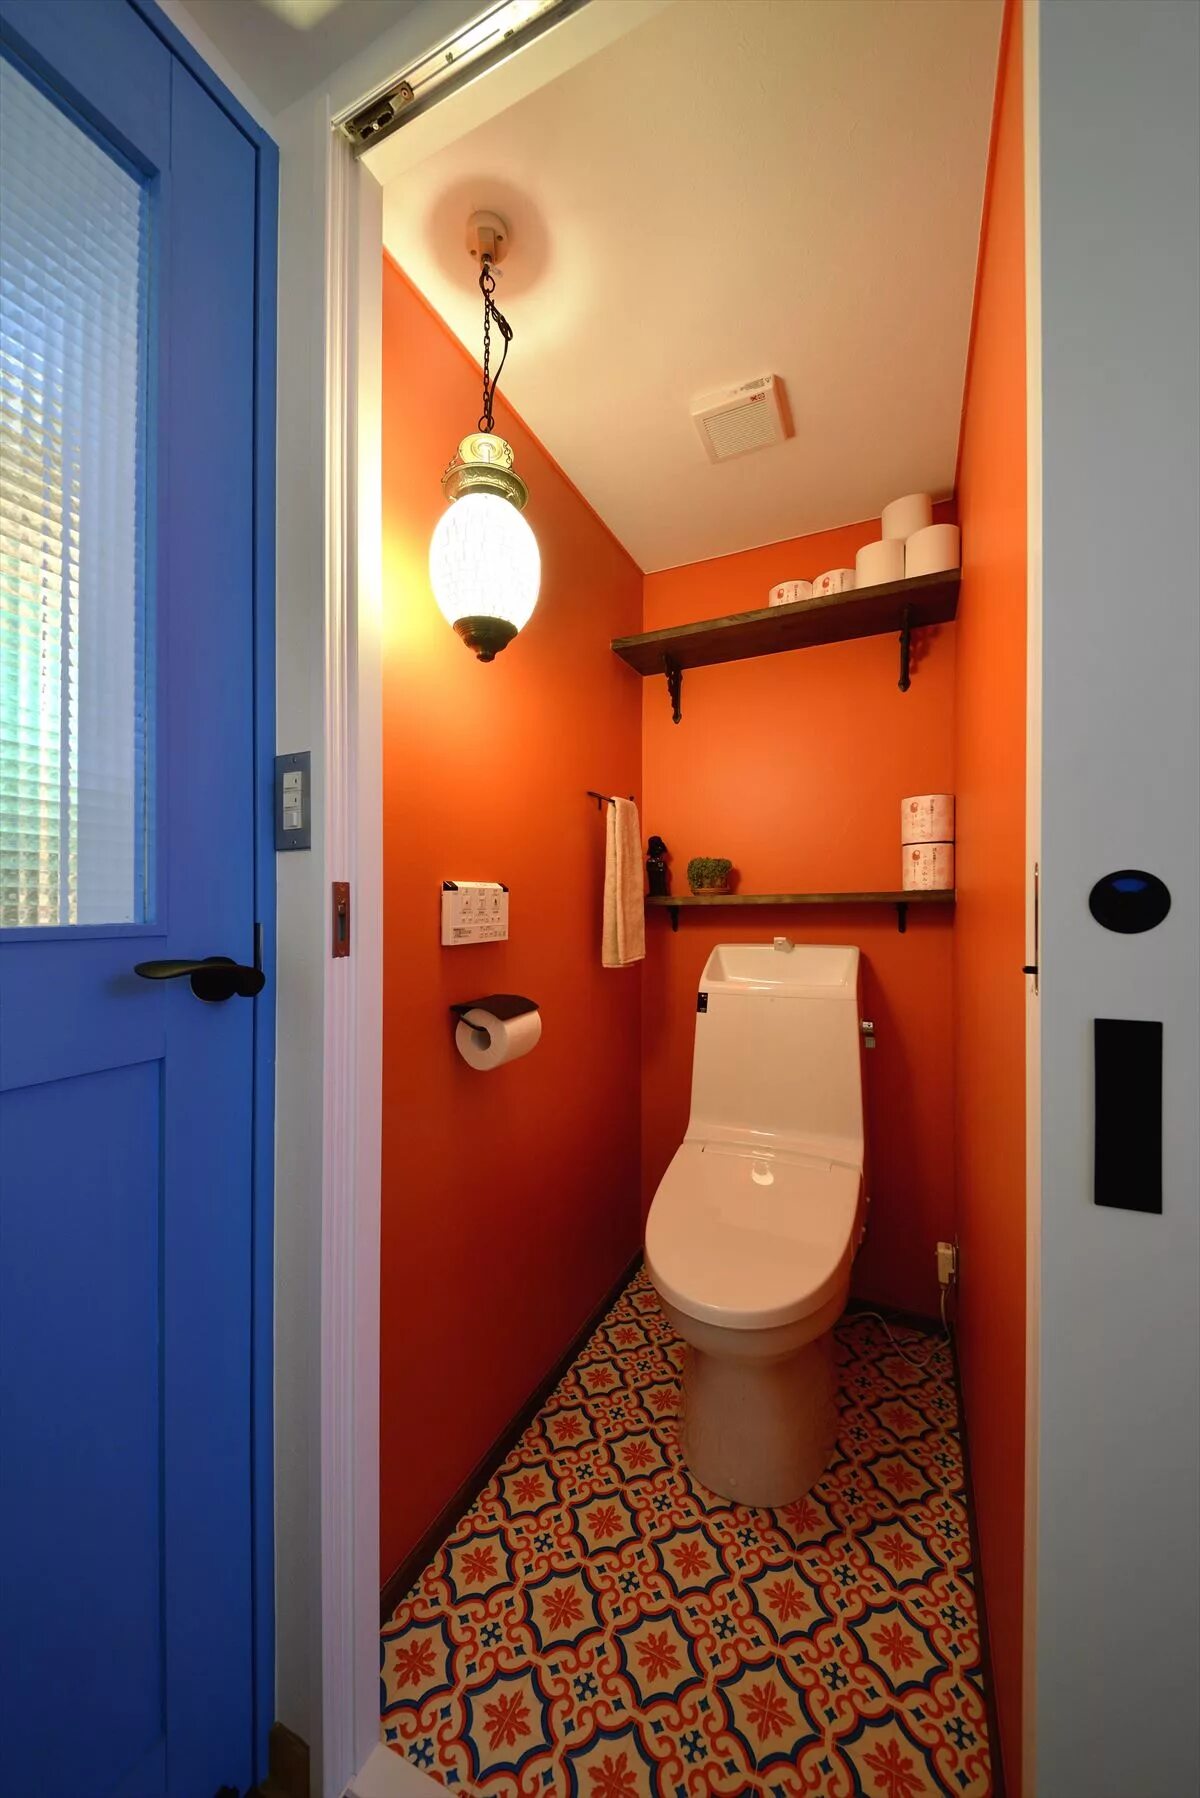 Какой под в туалете. Туалетная комната. Туалет в квартире. Красивый туалет. Туалет в оранжевом цвете.